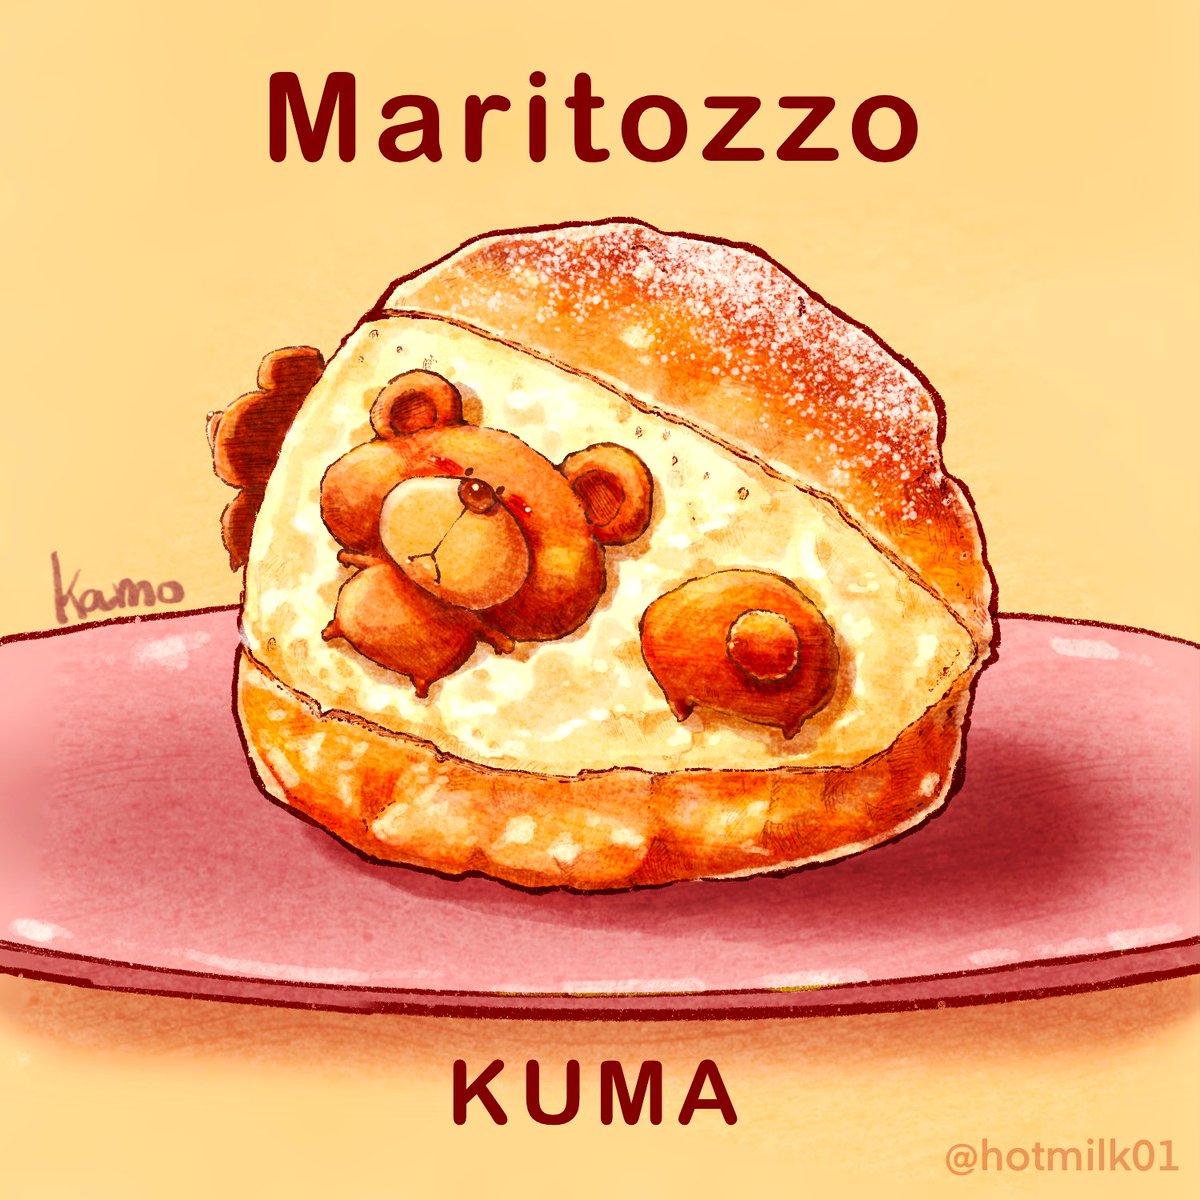 Kamo 食べ物 動物ｲﾗｽﾄ マリトッツォ Kuma マリトッツォ 食べ物イラスト